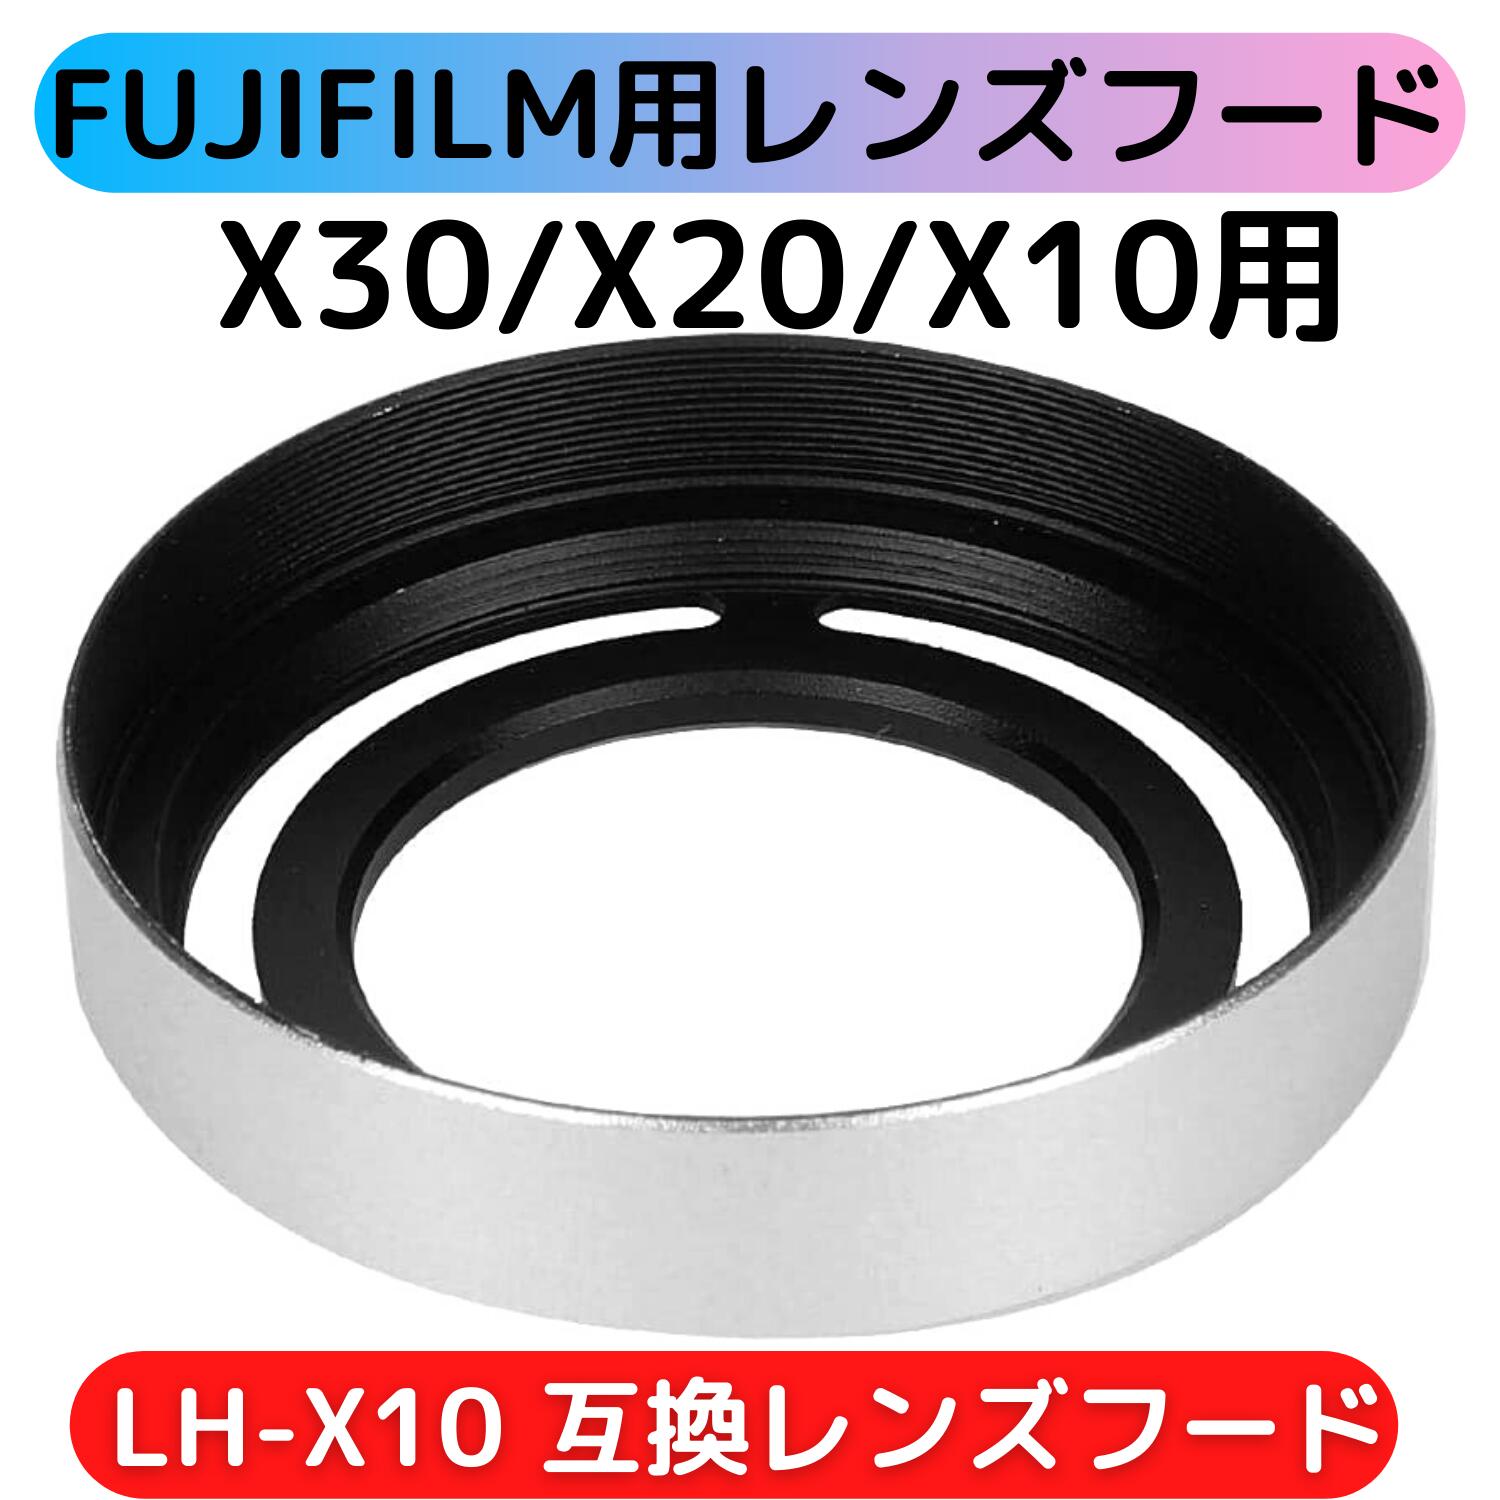 FUJIFILM FinePix X10 X20専用 レンズフード LH-X10 互換品 シルバー 金属製